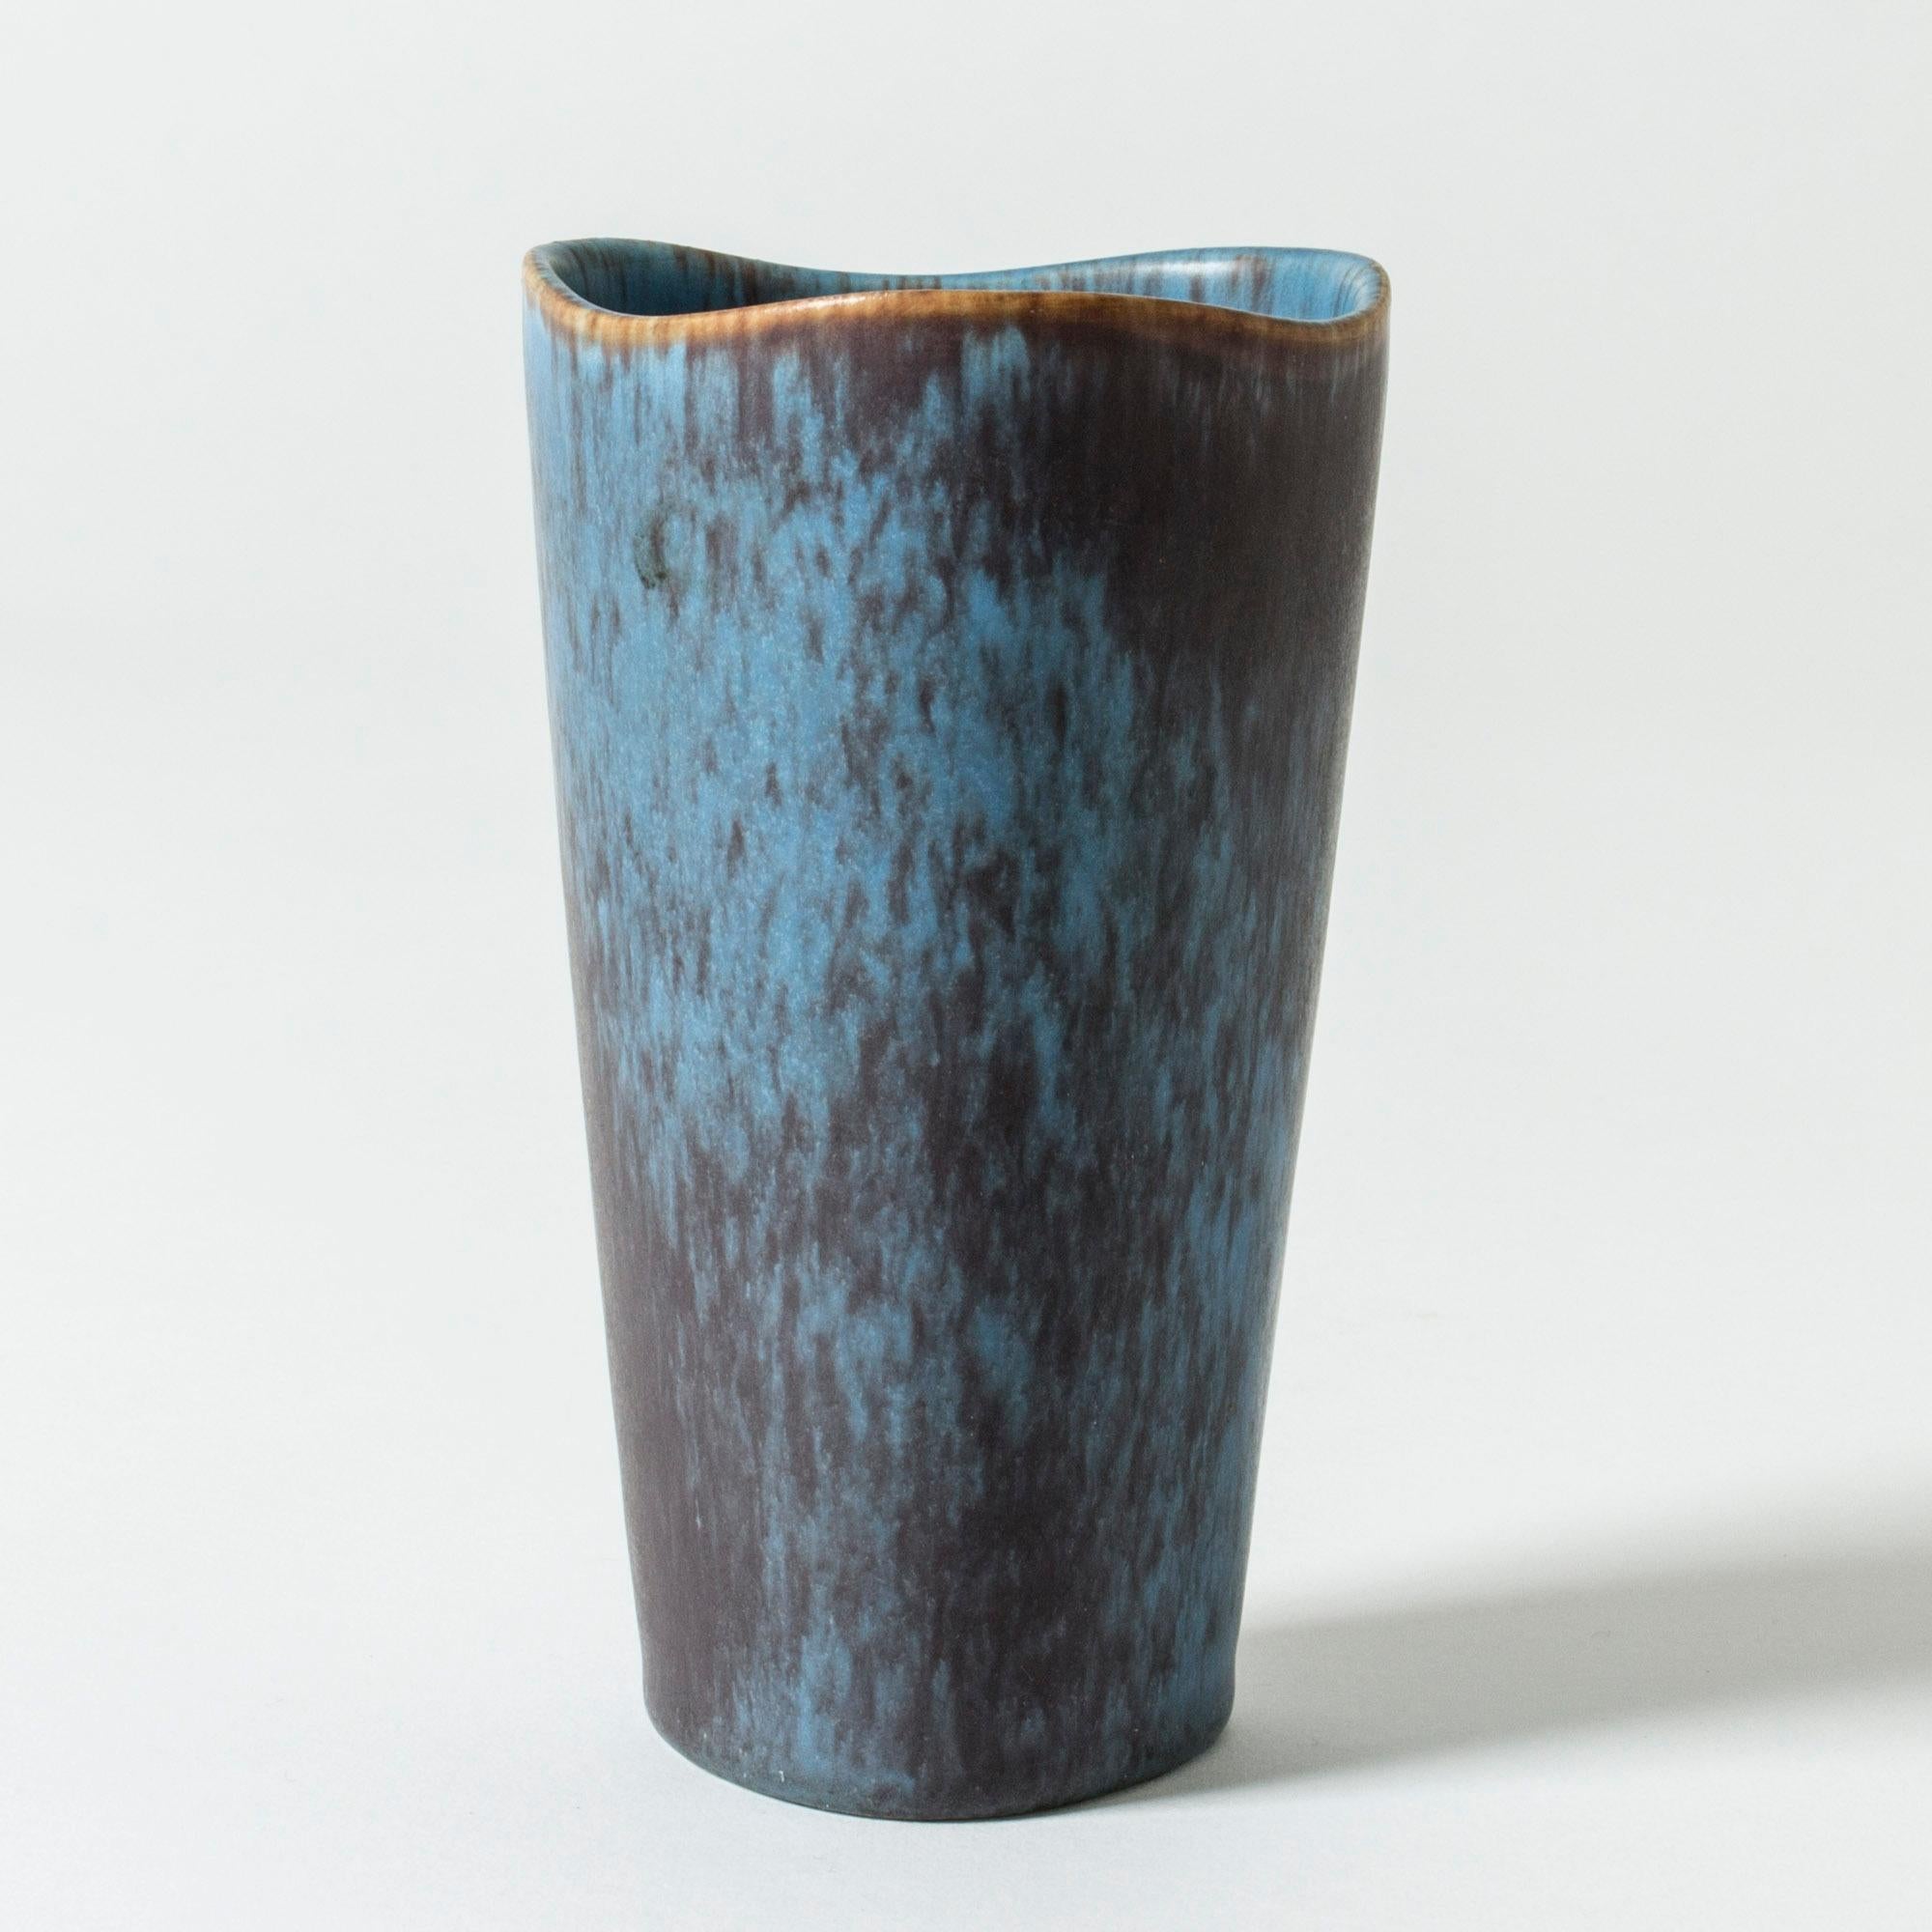 Vase en grès à la forme épurée de Gunnar Nylund, le bord ondulé adoucit la forme. Glaçage bleu vif avec des stries violettes.

Gunnar Nylund était l'un des céramistes et designers les plus influents de la période suédoise du milieu du siècle